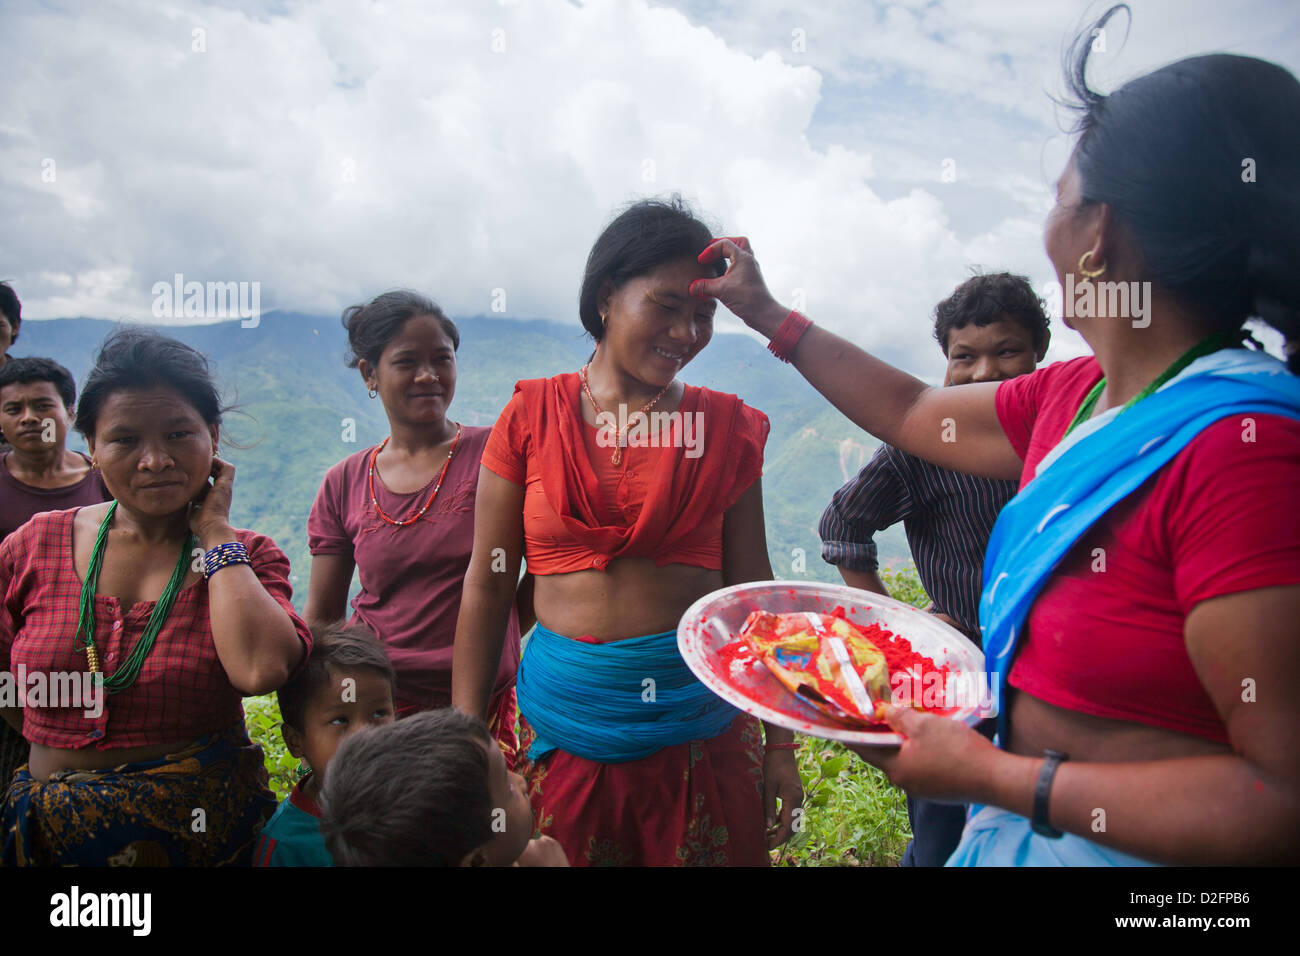 Sanamaya Chepang gibt Tika, Menschen in einem örtlichen sammeln, eine Hindu-Tradition bedeutet viel Glück und Gesundheit. Stockfoto